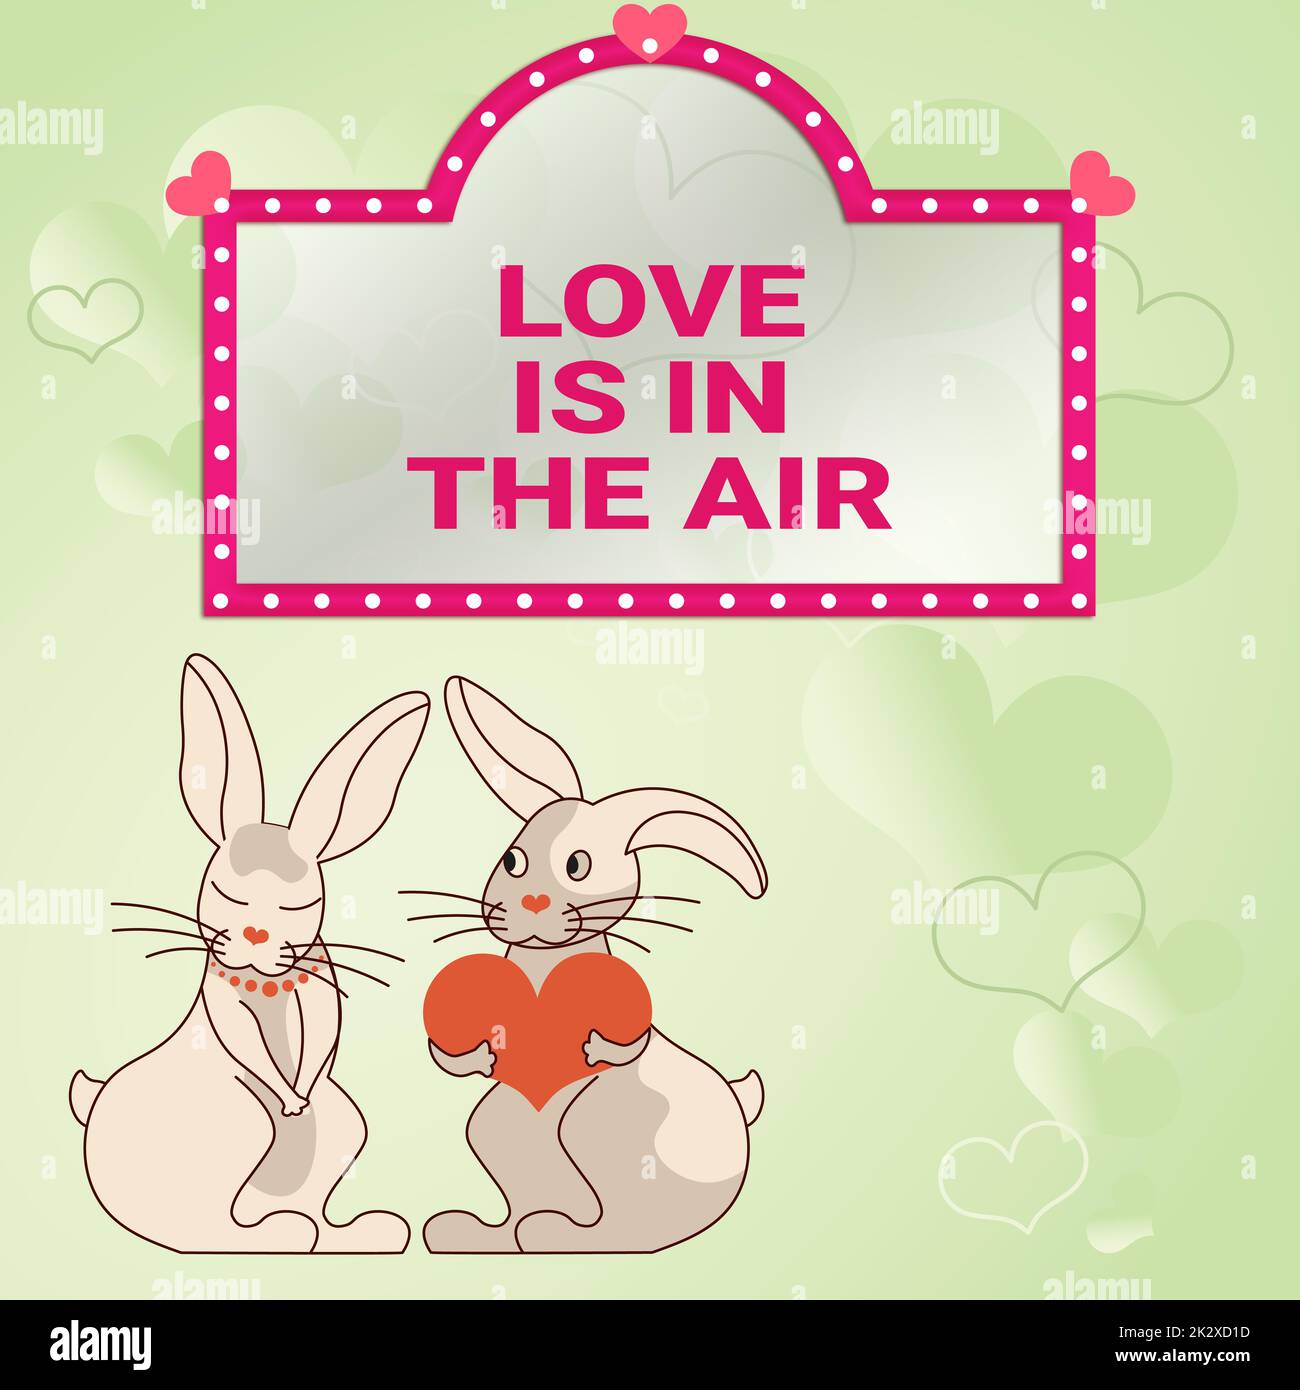 L'AMOUR conceptuel de l'affichage EST DANS L'AIR. Approche commerciale Saint-Valentin cartes de voeux en arrière-plan rouge lapins avec des cadeaux en forme de coeur démontrez les amoureux passionnés avec des cadeaux Banque D'Images